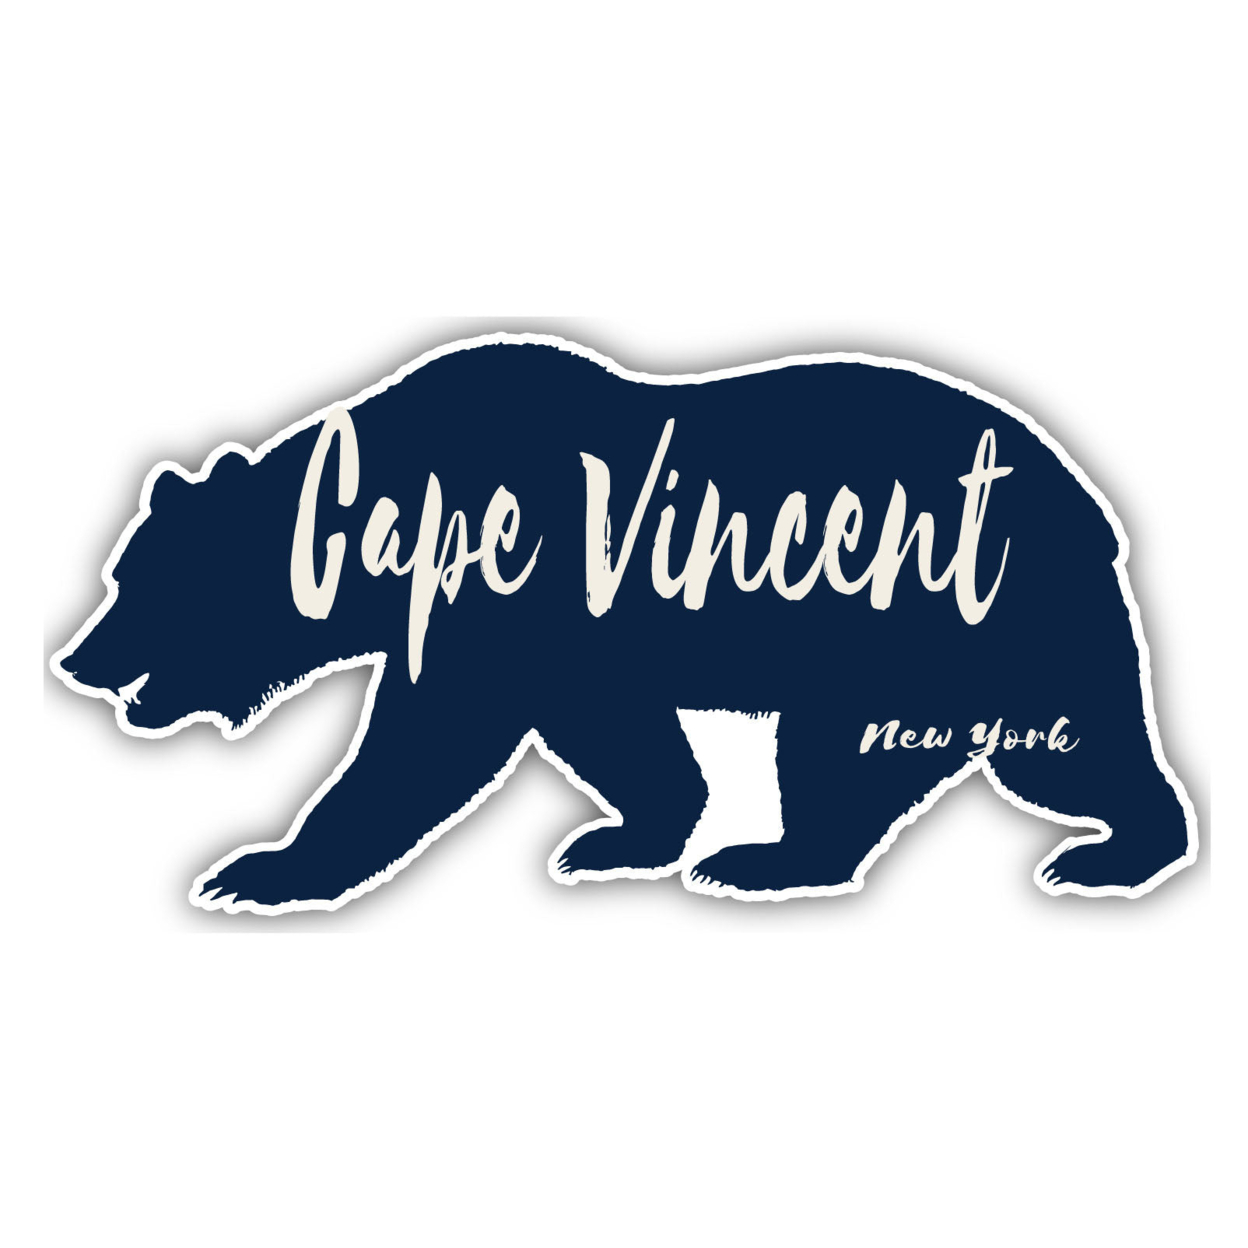 Cape Vincent New York Souvenir Decorative Stickers (Choose Theme And Size) - Single Unit, 4-Inch, Bear